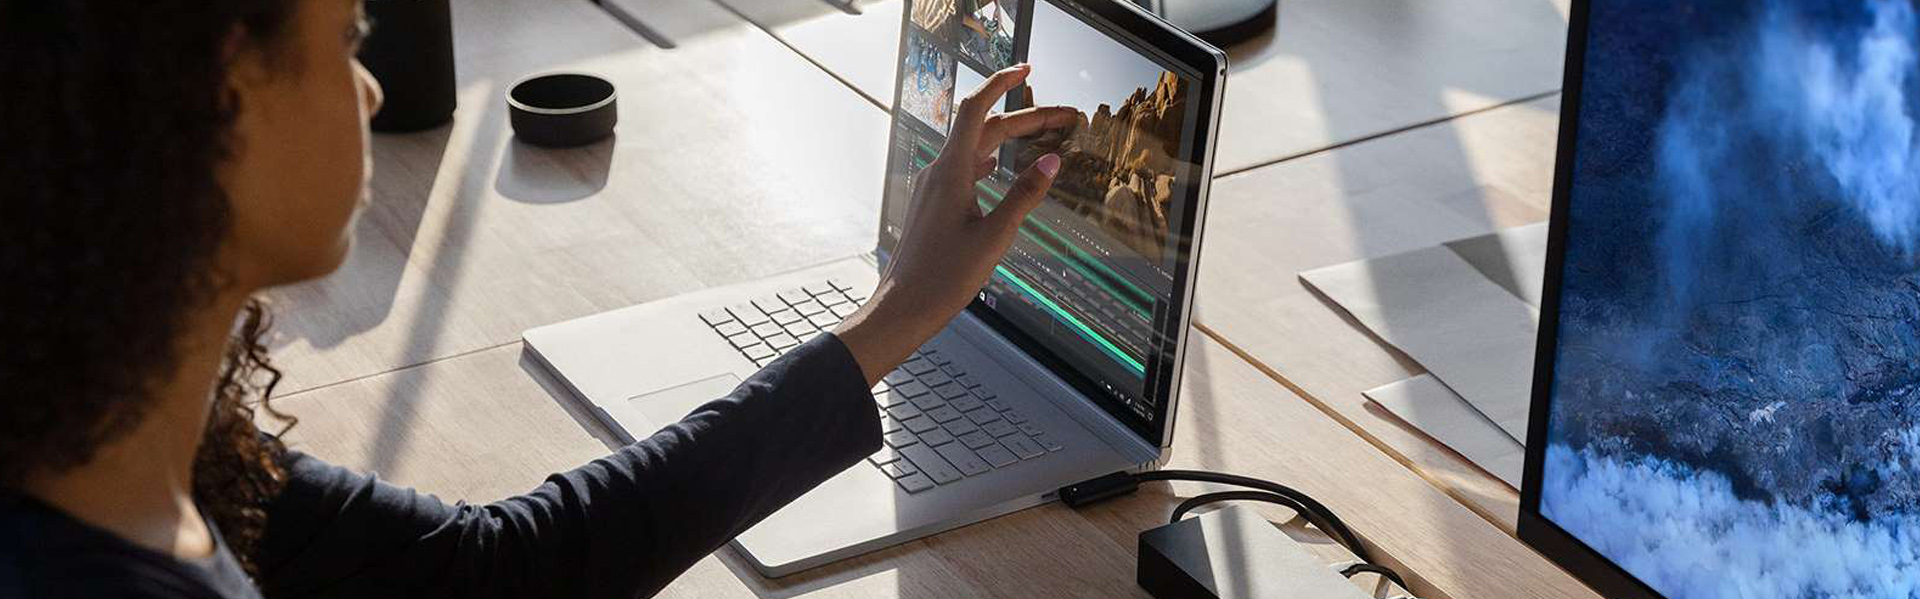 Surface Book 3 предназначен для работы и творчества